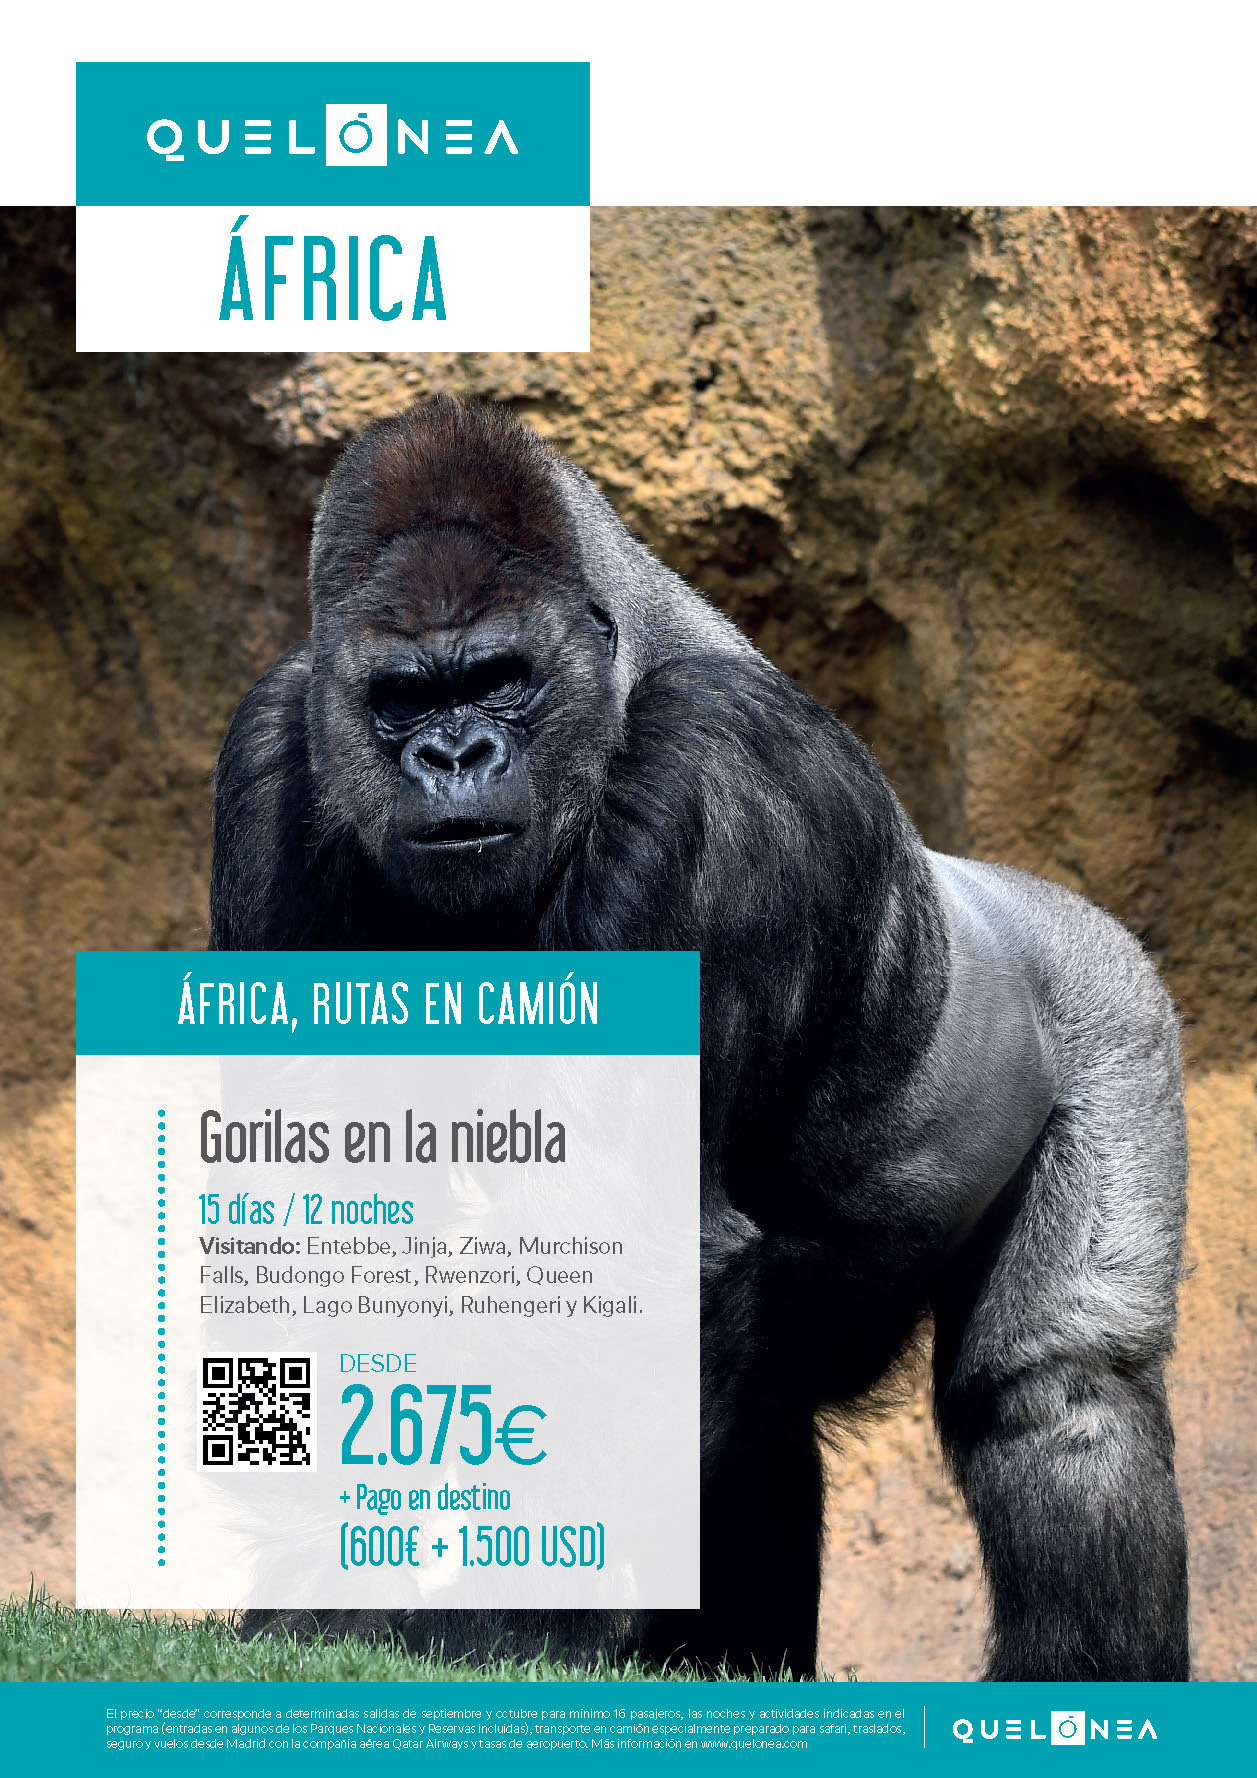 Oferta Quelonea 2022-2023 Circuito Africa Ruta en camion Gorilas en la Niebla 15 dias